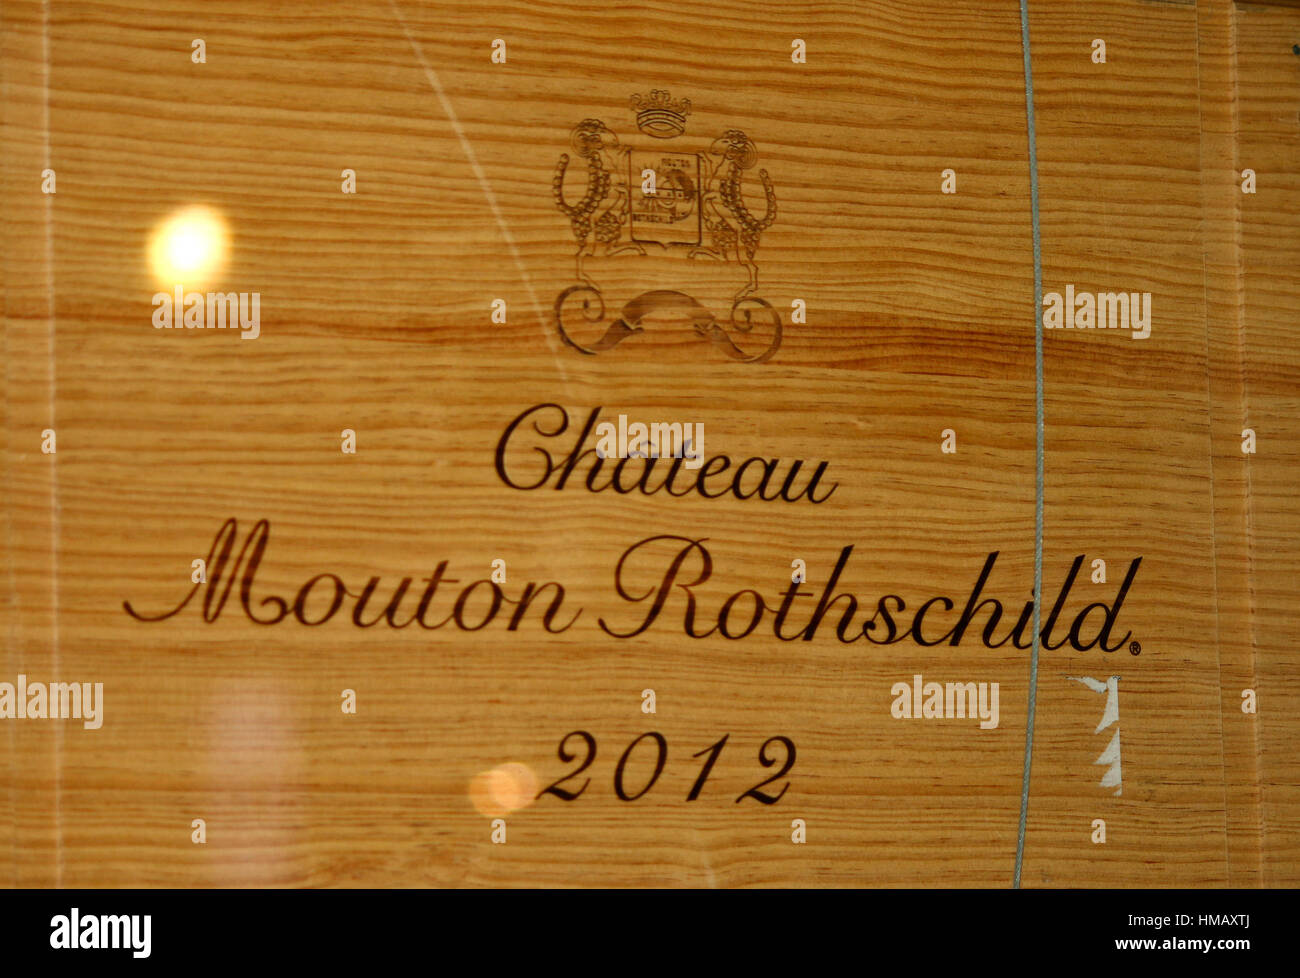 Das Logo der Marke "Chateau Mouton Rothschild", Berlin. Stockfoto